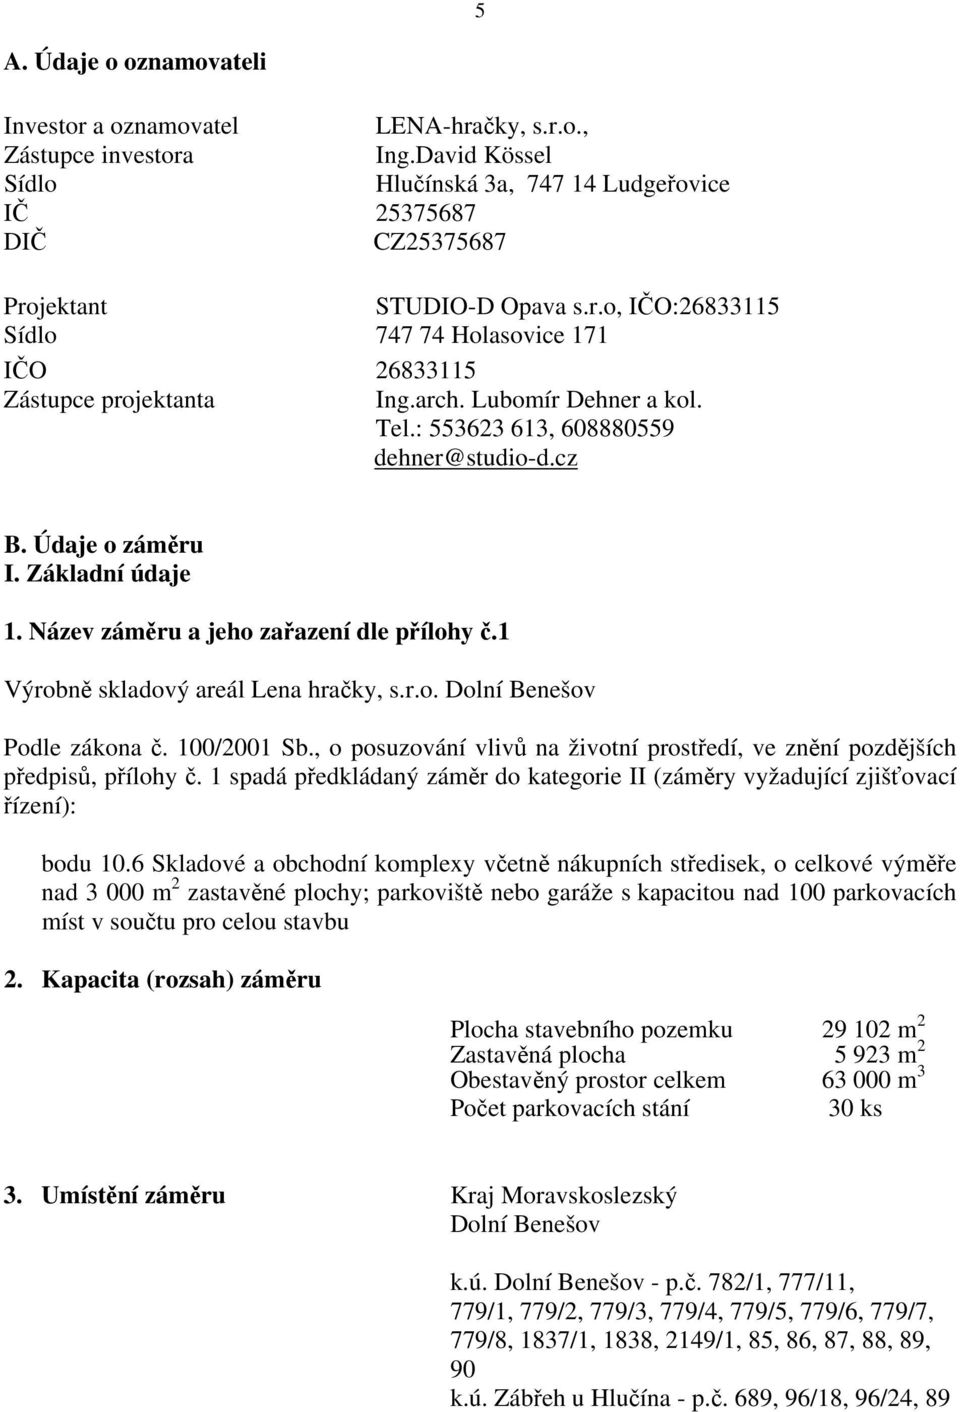 VÝROBNĚ SKLADOVÝ AREÁL LENA HRAČKY, s.r.o. DOLNÍ BENEŠOV - PDF Free Download